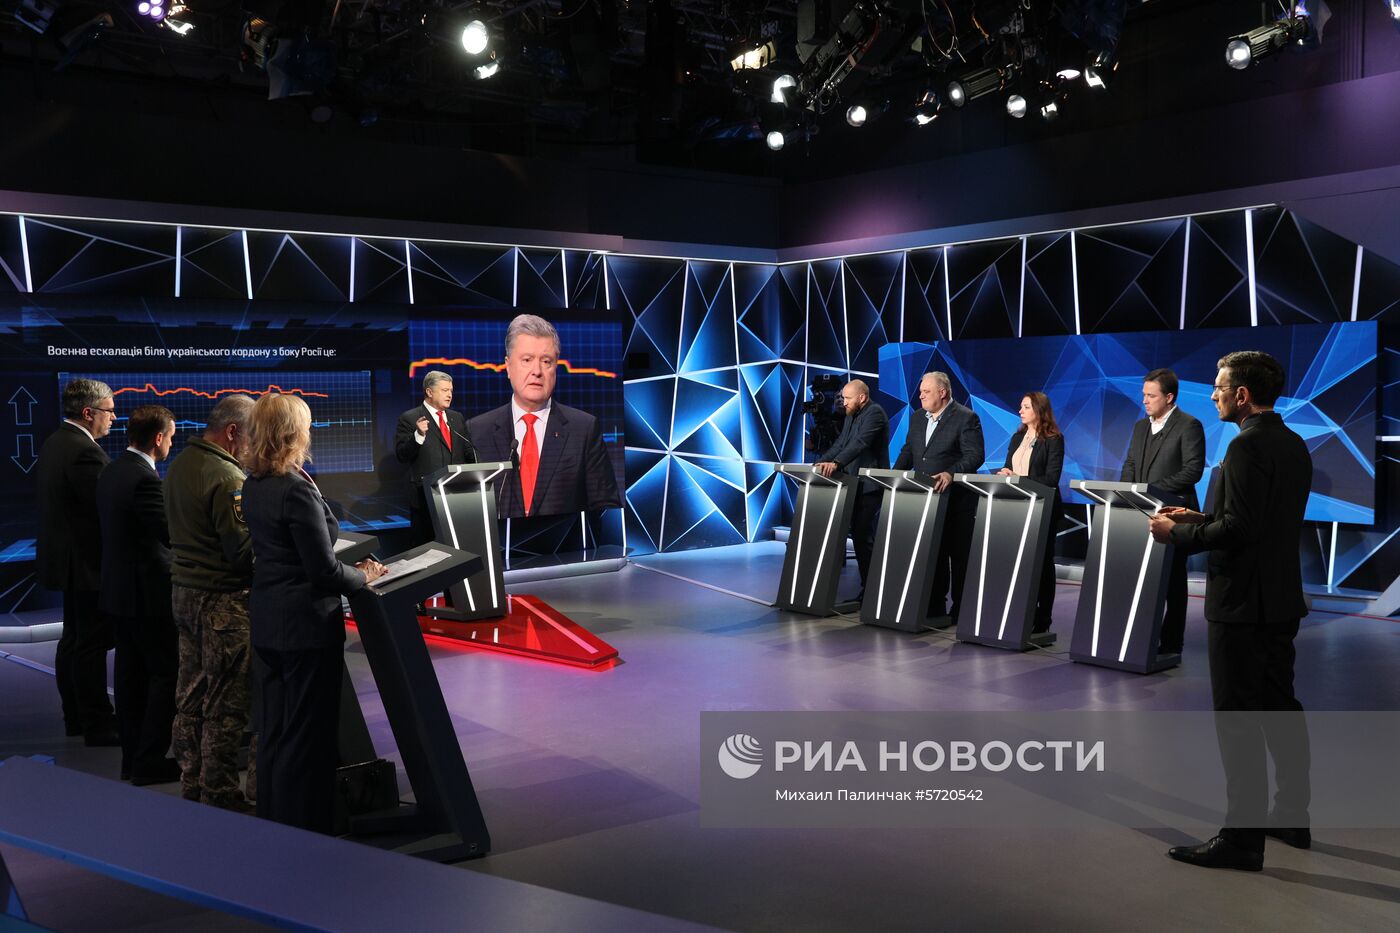 Президент Украины П. Порошенко принял участие в ток-шоу "Свобода слова" на канале ICTV